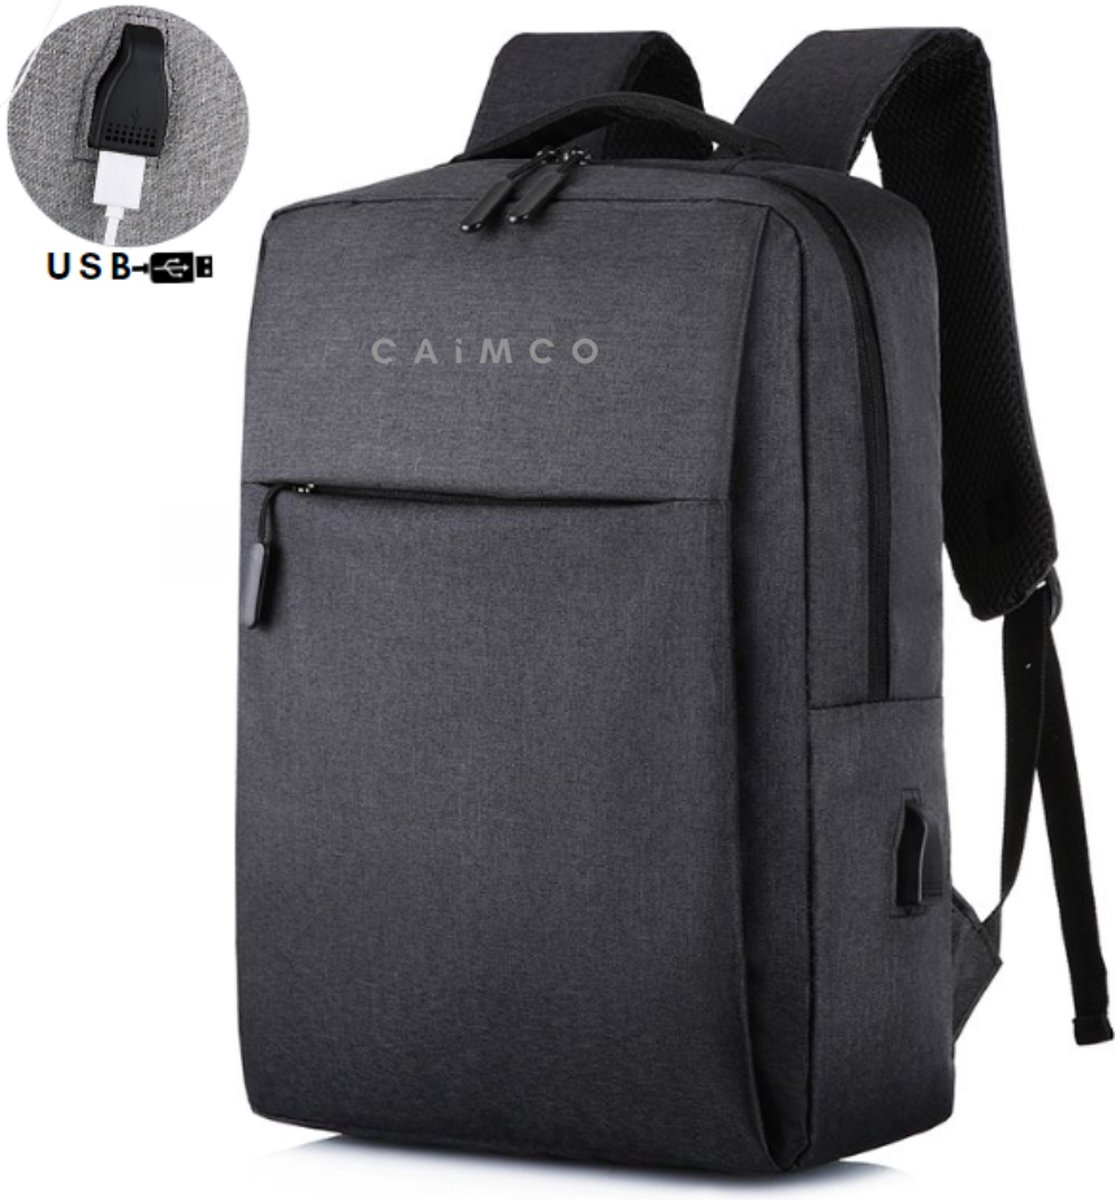 Rugzak - Caimco® Zwart - Laptop Rugtas - Inclusief USB-aansluiting - Jongens - Heren - Dames - Travel Bag - Spatwaterdicht